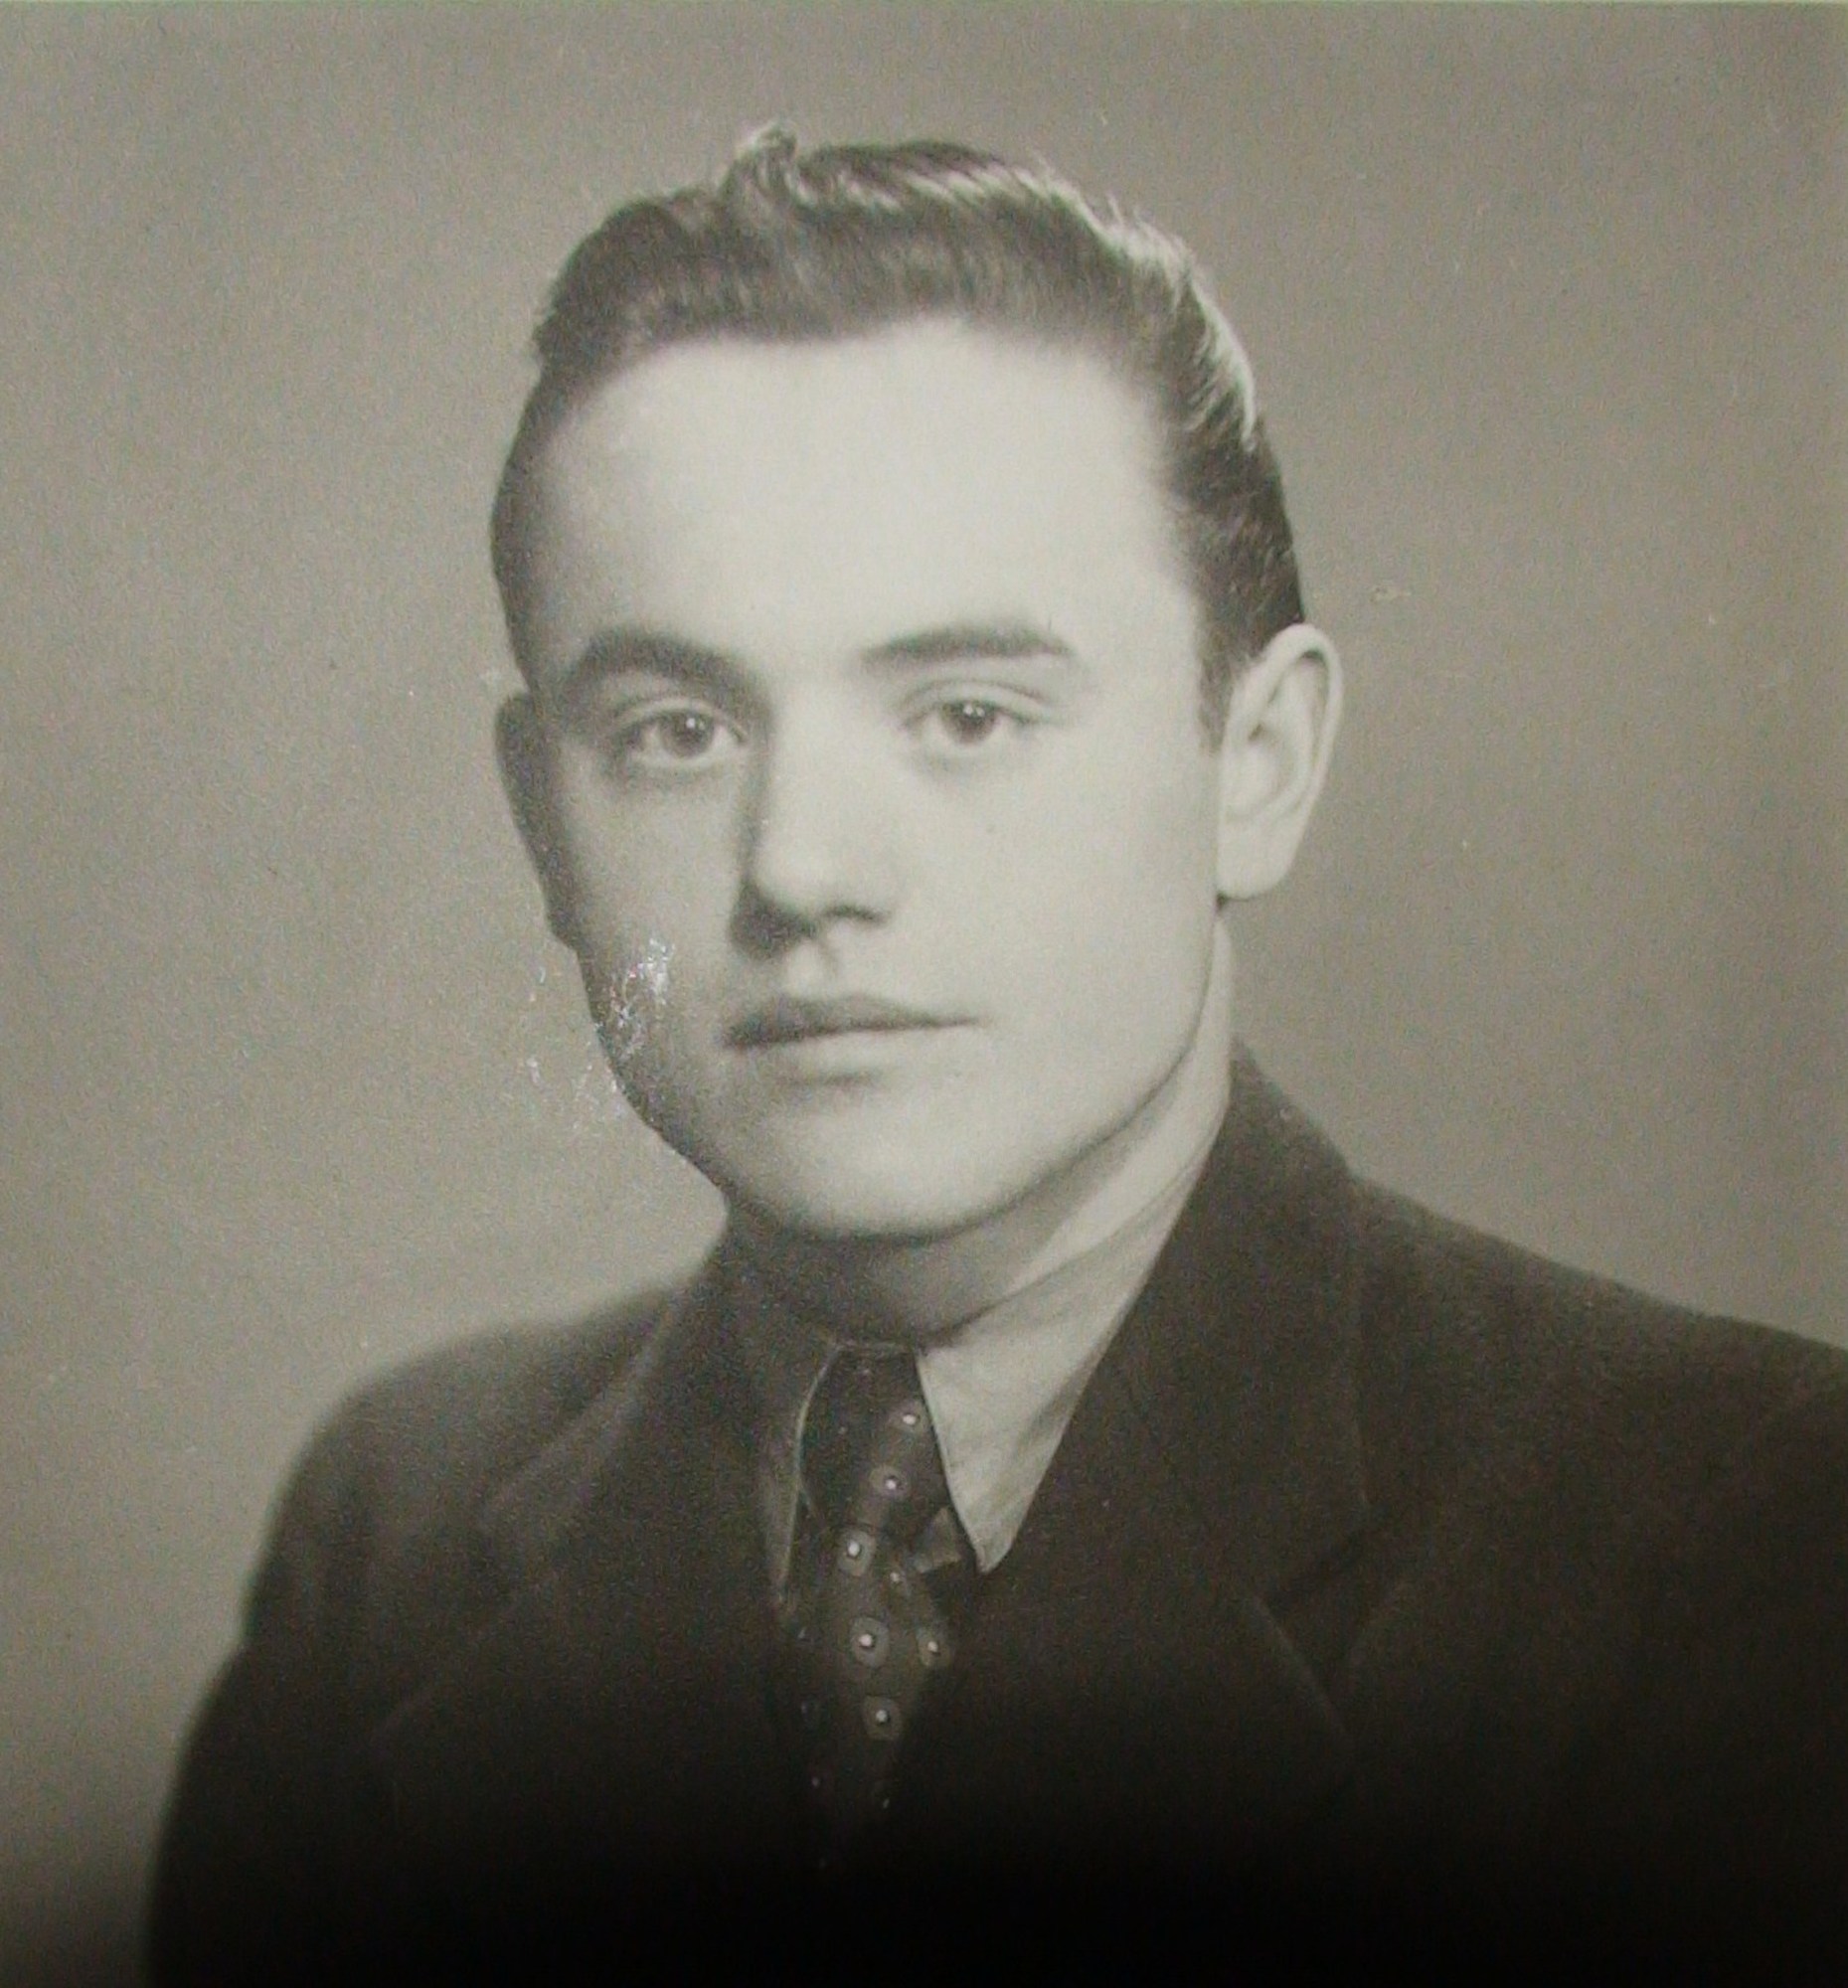 René Dlouhý in the late 1940s